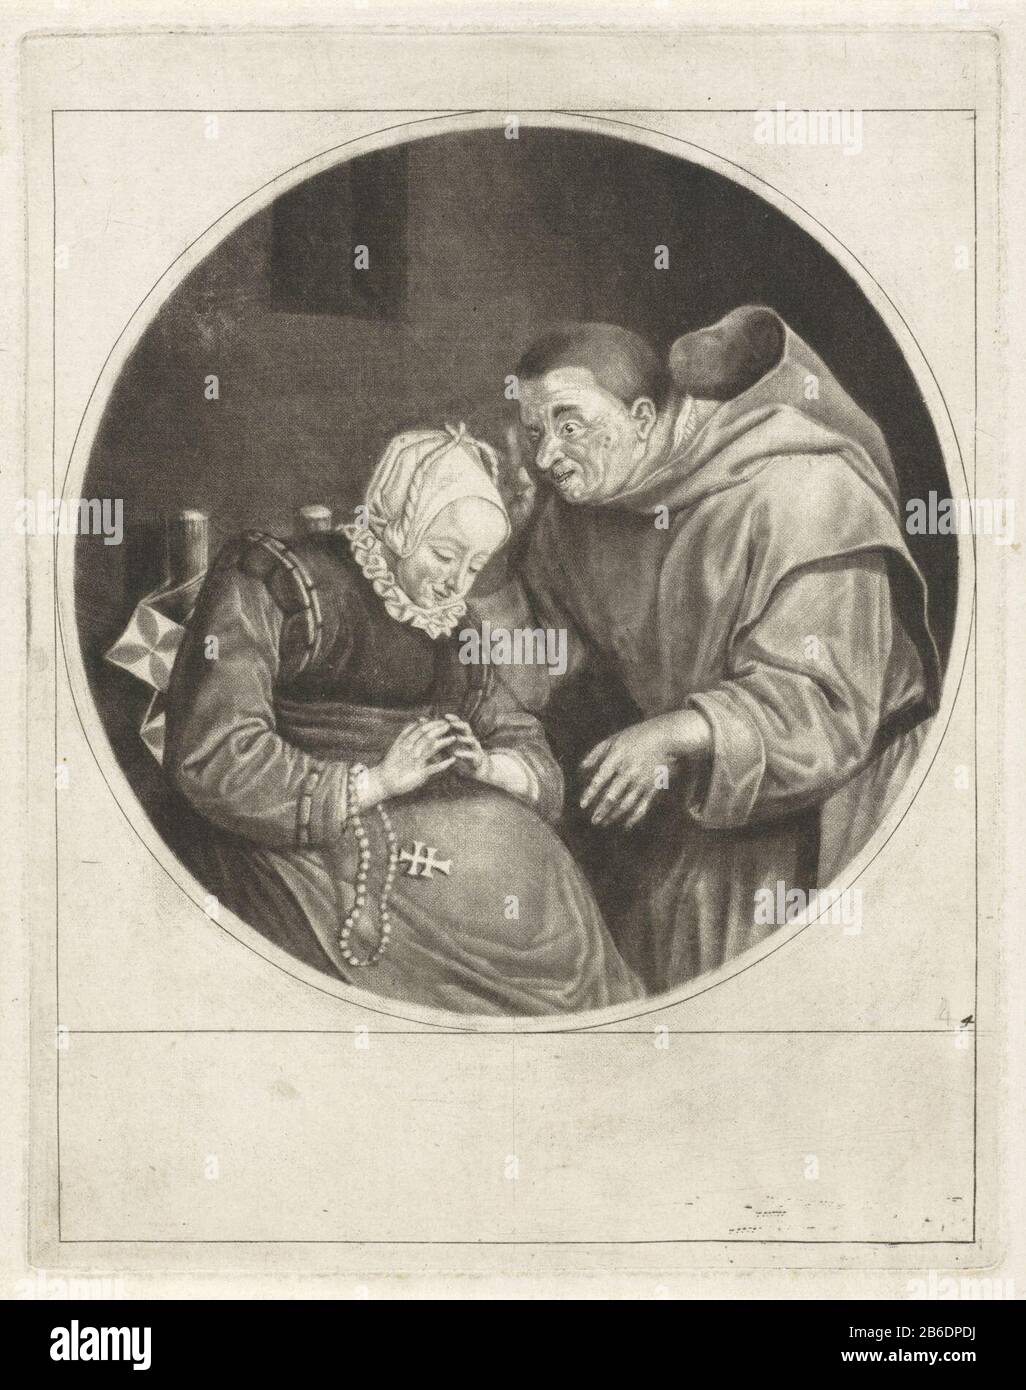 Monjes Biecht y Nonnen (título de serie) un monje exhorta a una mujer  sentada. Ella tiene un rosario alrededor de su muñeca. La impresión forma  parte de una serie de seis impresiones